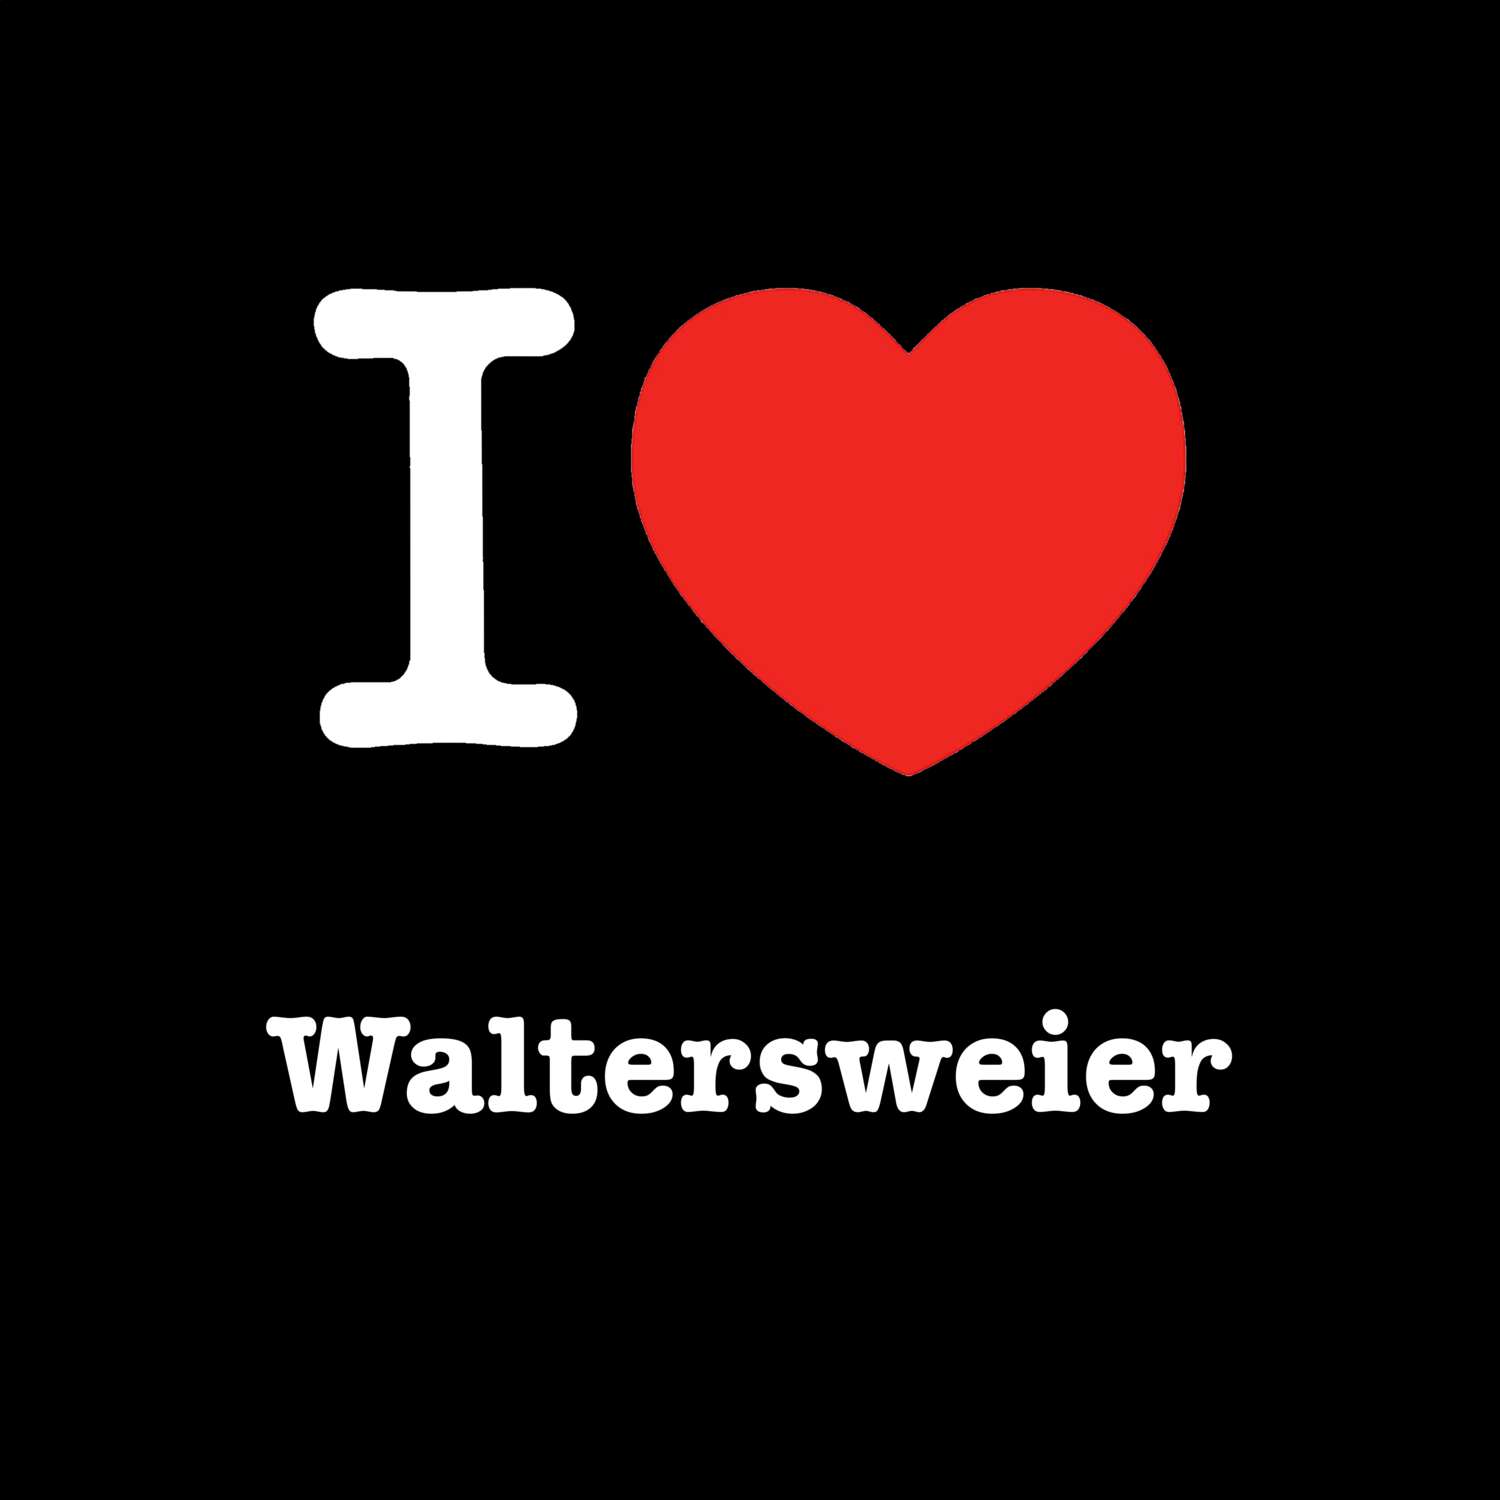 Waltersweier T-Shirt »I love«